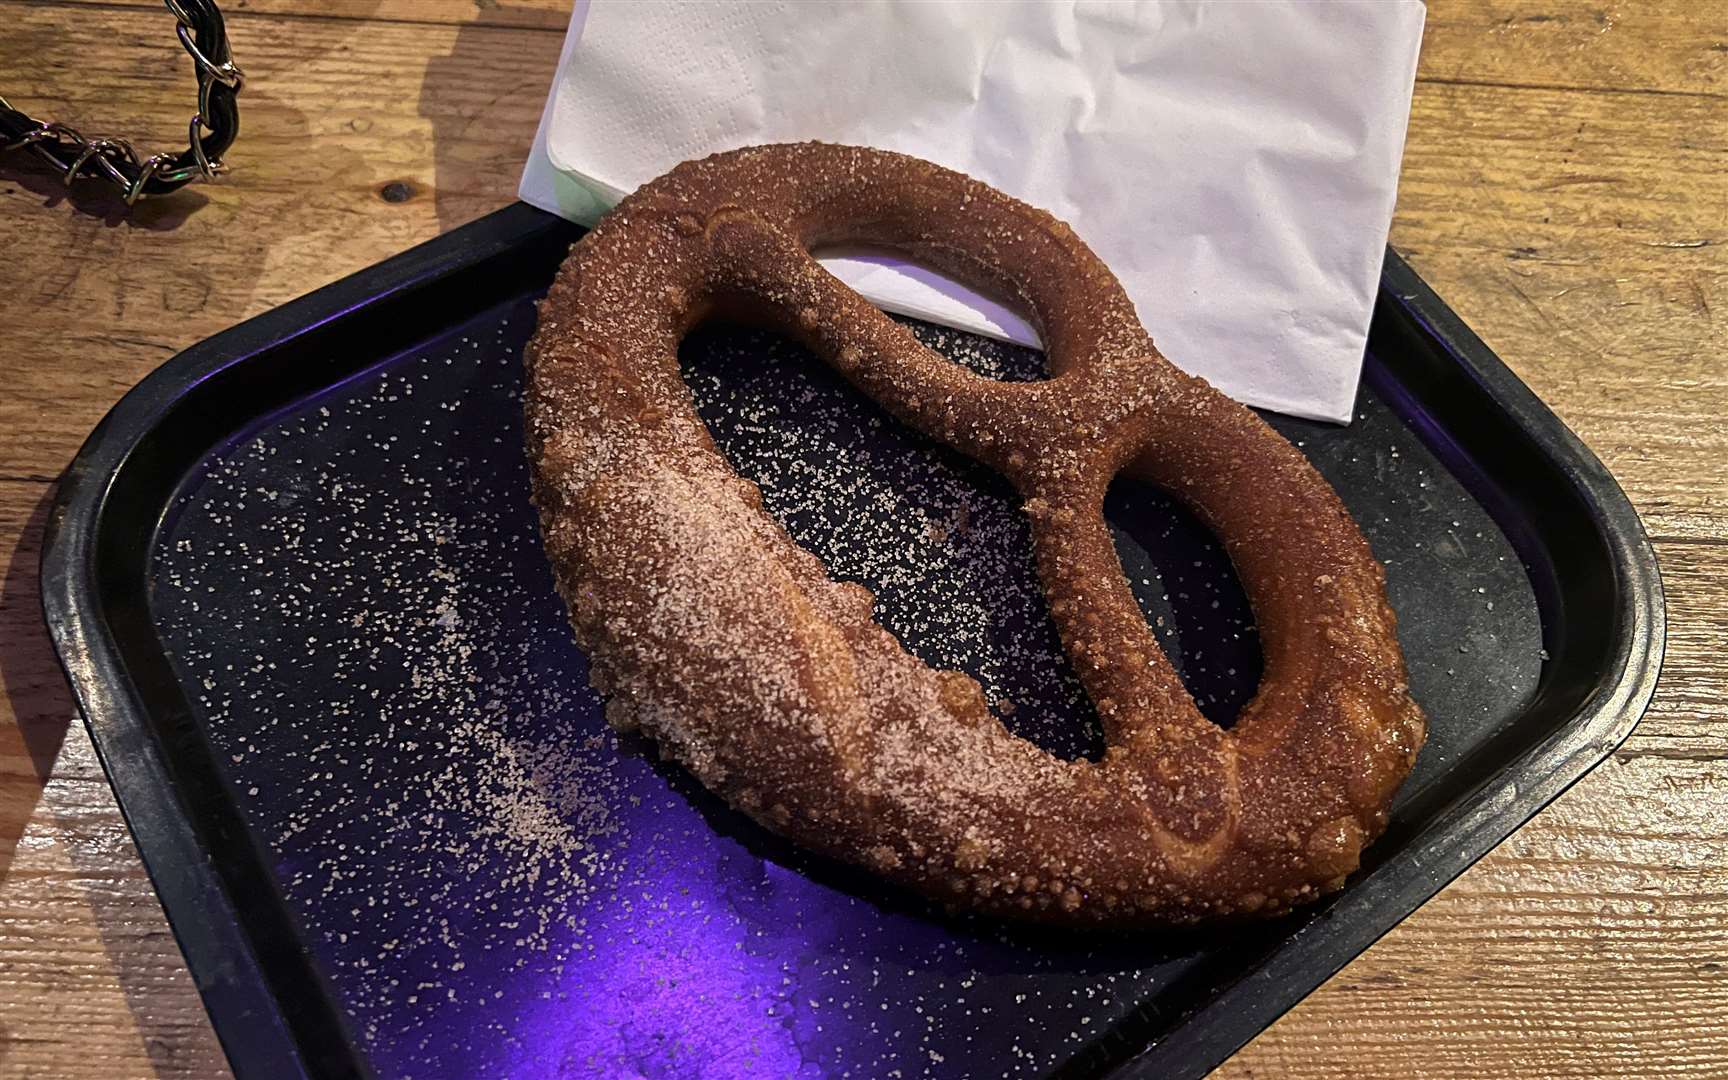 The sweet pretzel from Bierkeller